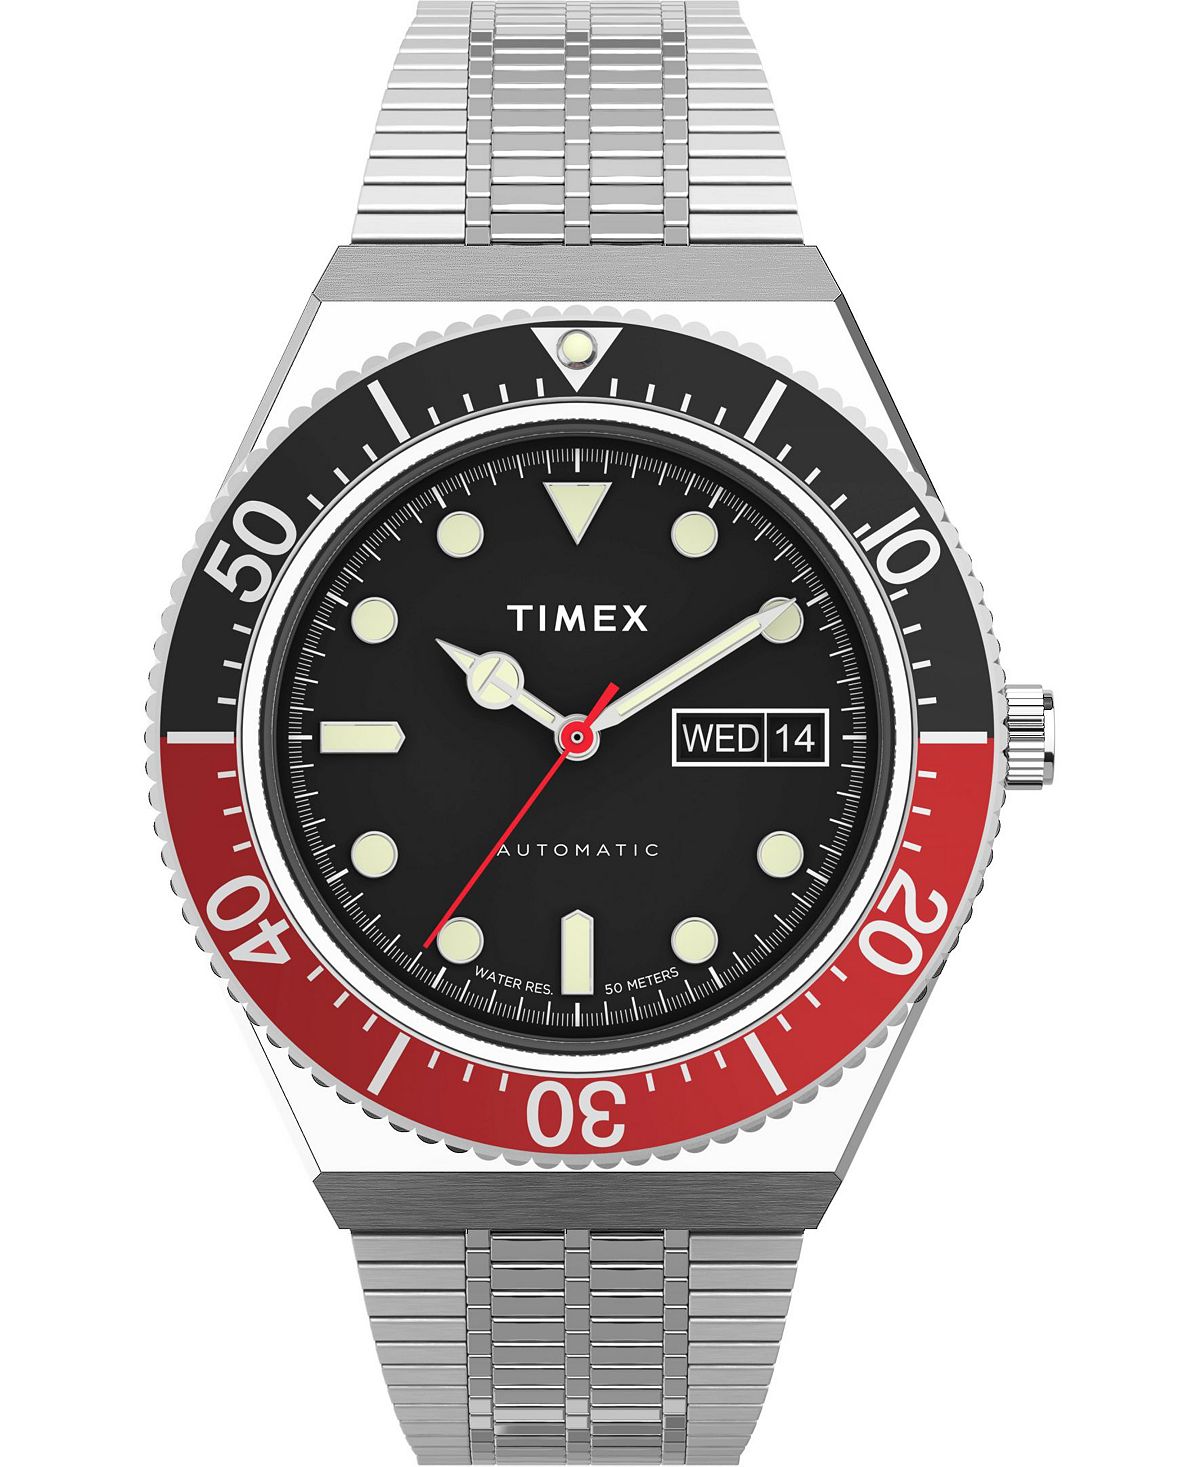 Мужские автоматические часы M79 серебристого цвета с браслетом из нержавеющей стали, 40 мм Timex женские часы q серебристого цвета с браслетом из нержавеющей стали 36 мм timex